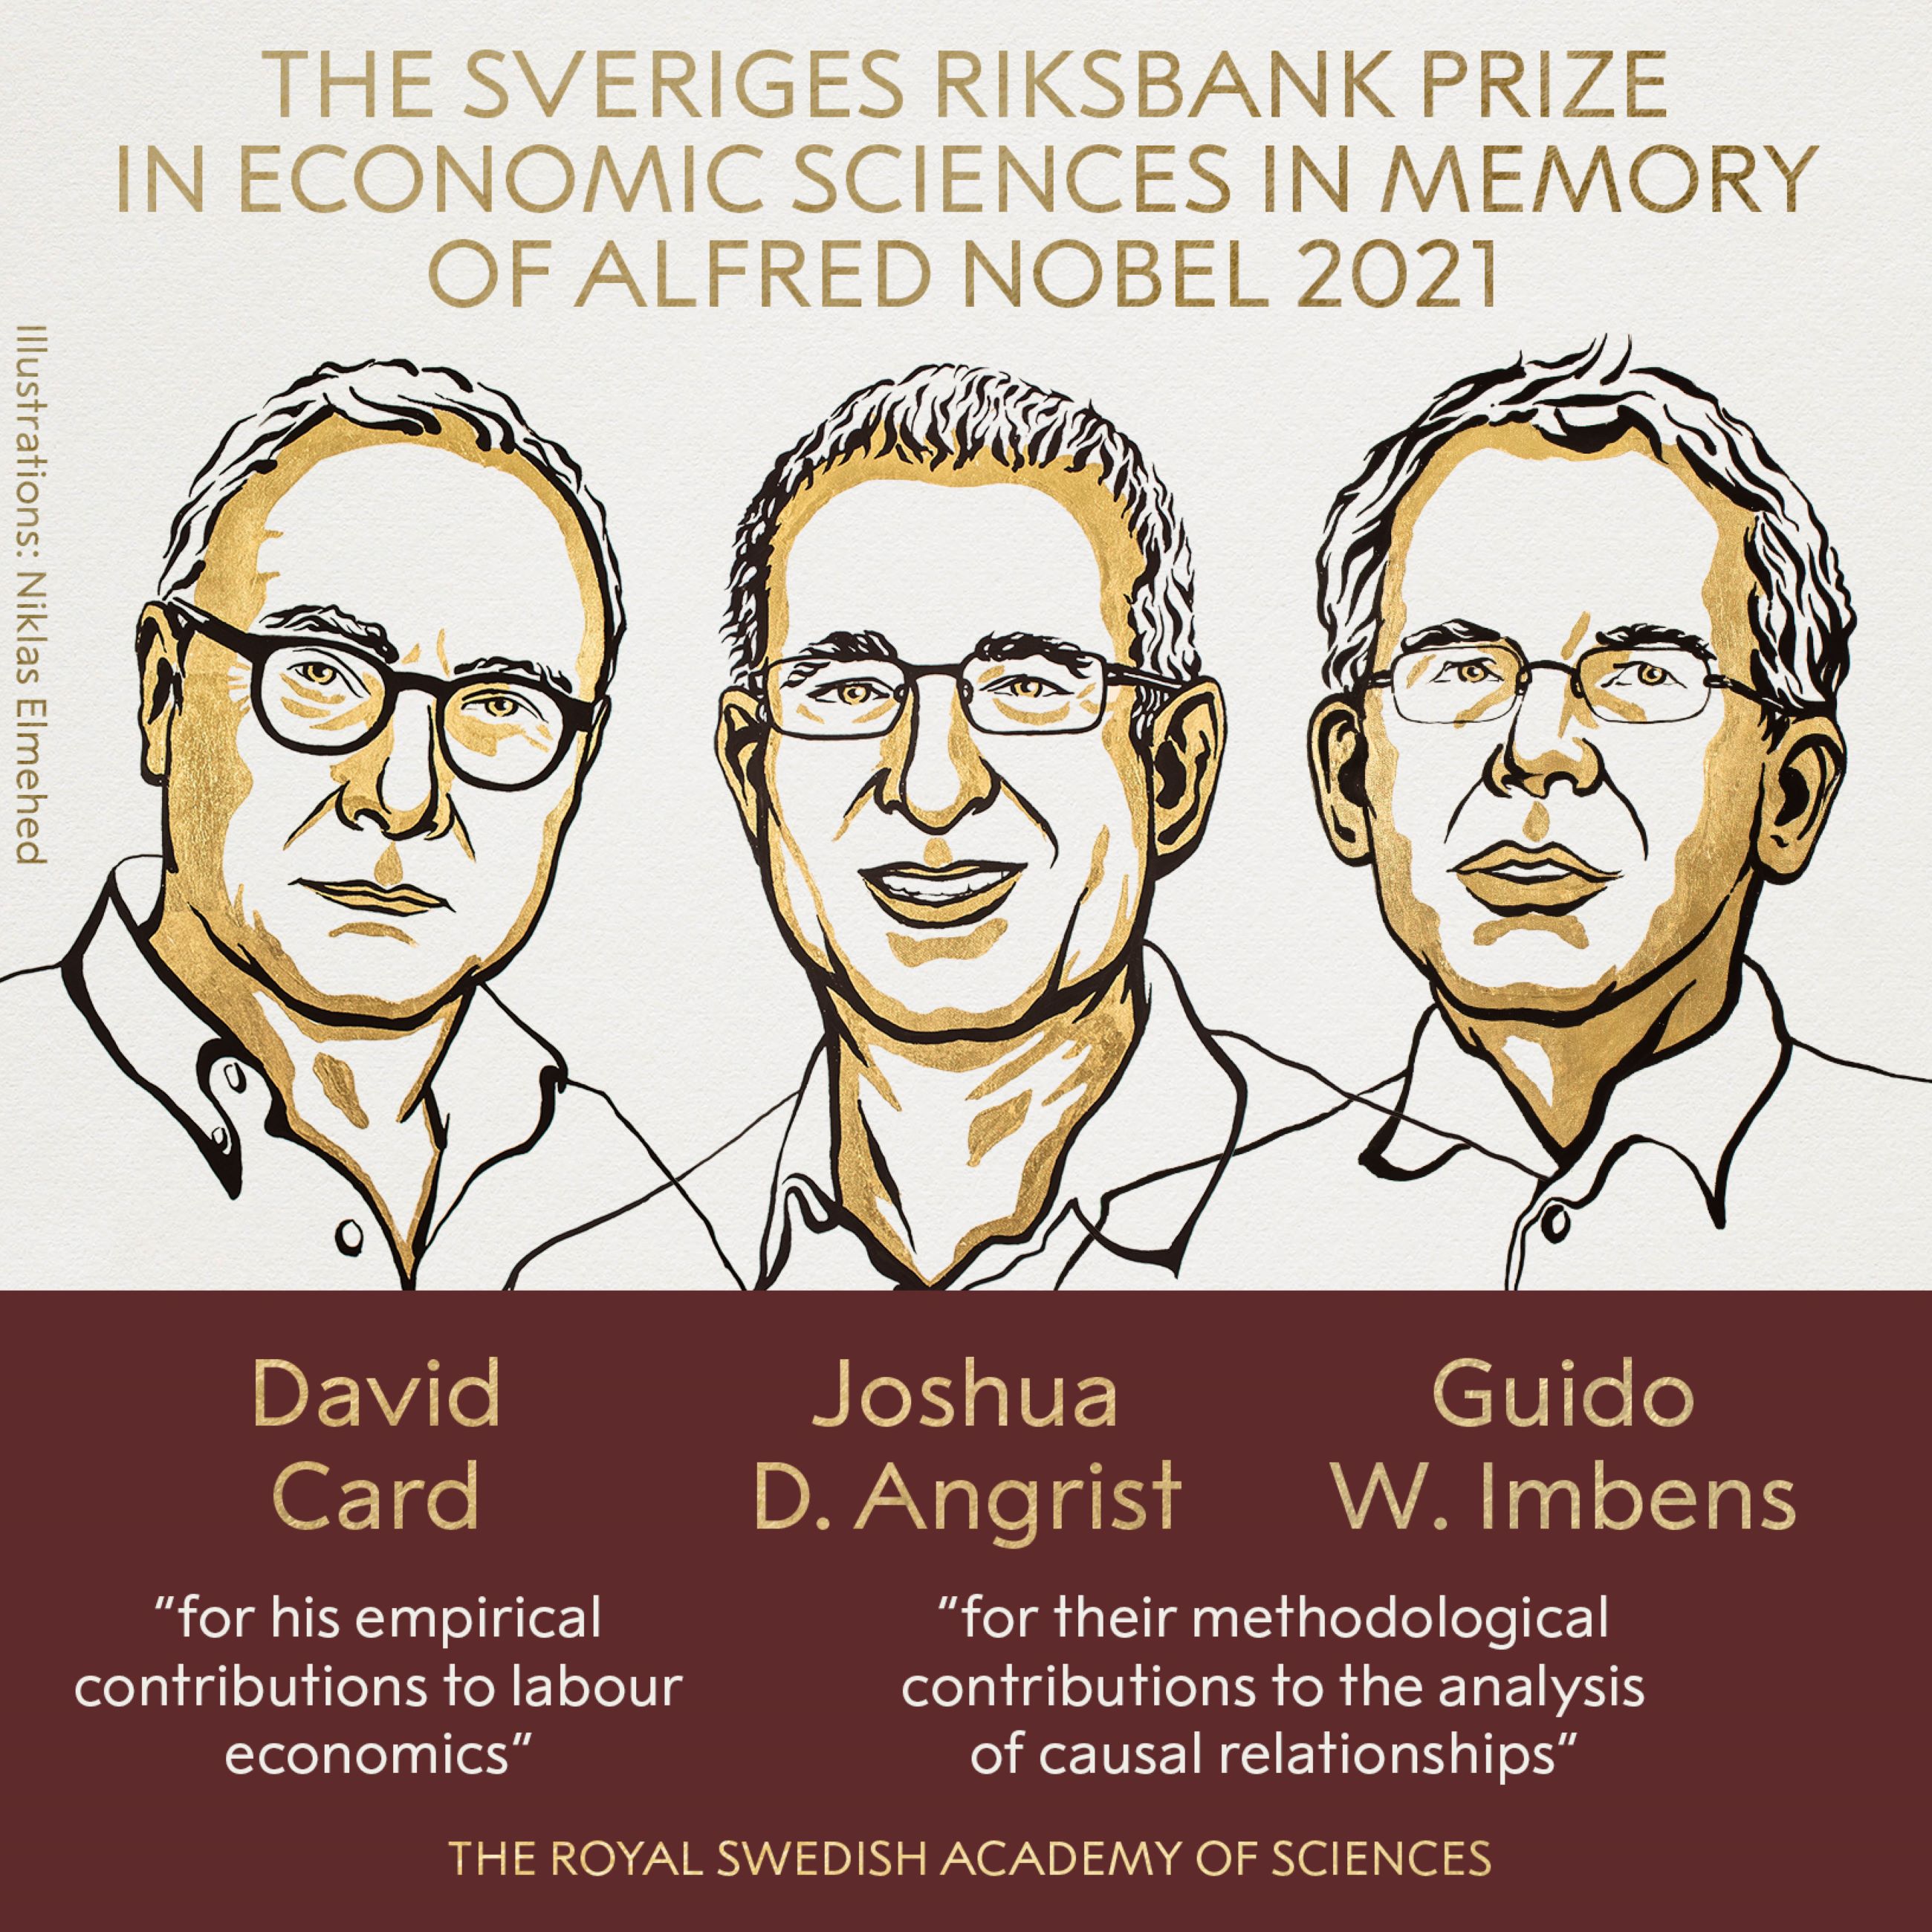 Els economistes Card, Angrist i Imbens reben premi Nobel d'Economia